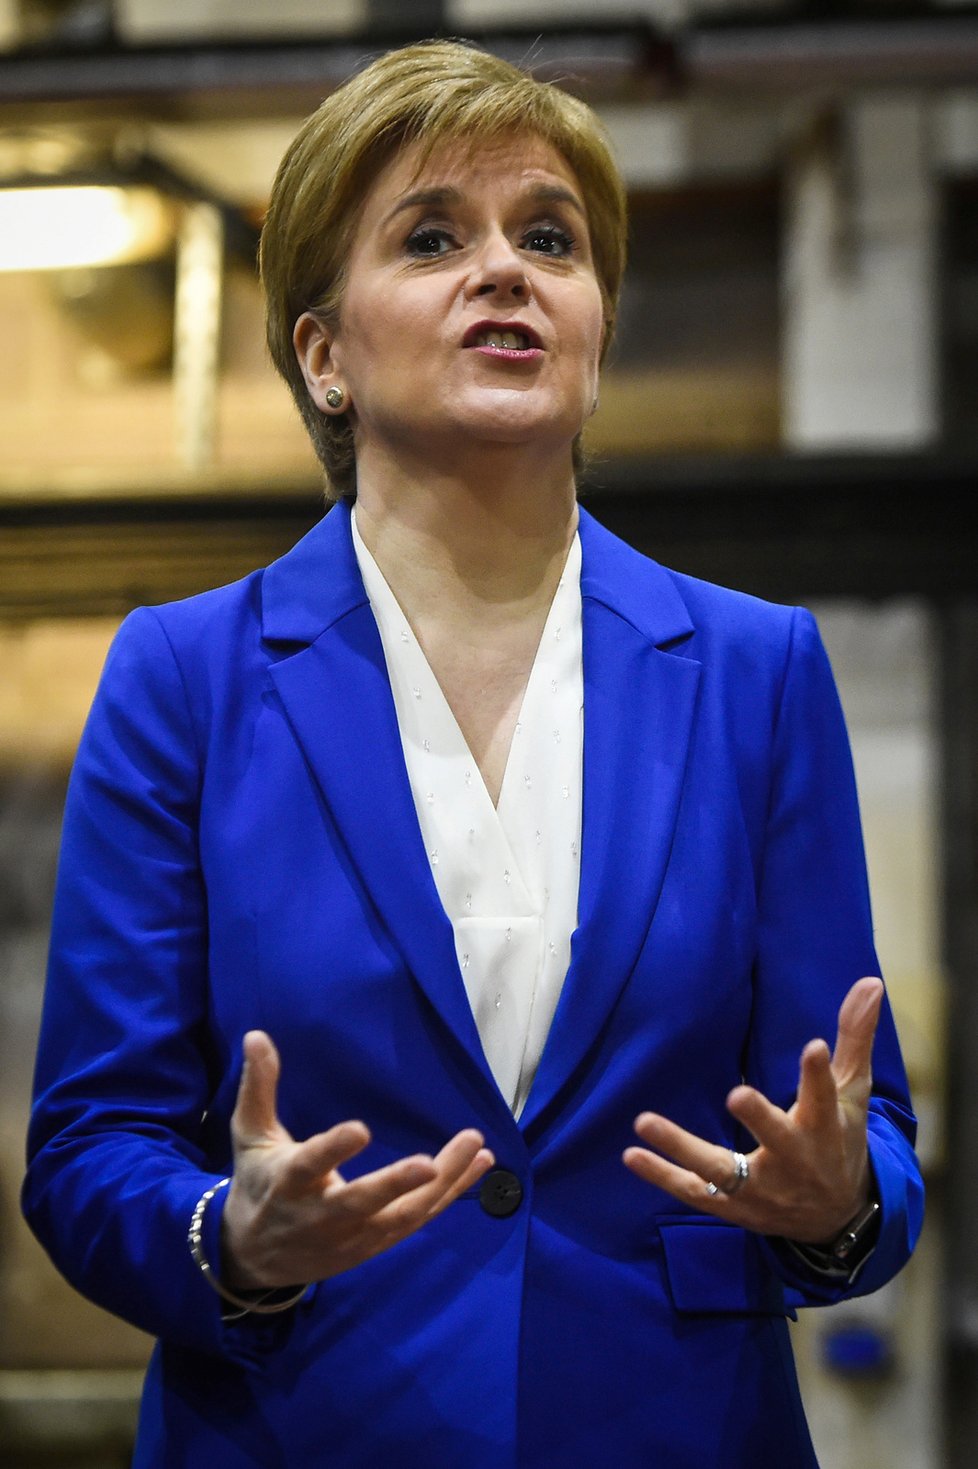 První ministryně Skotska Nicola Sturgeonová